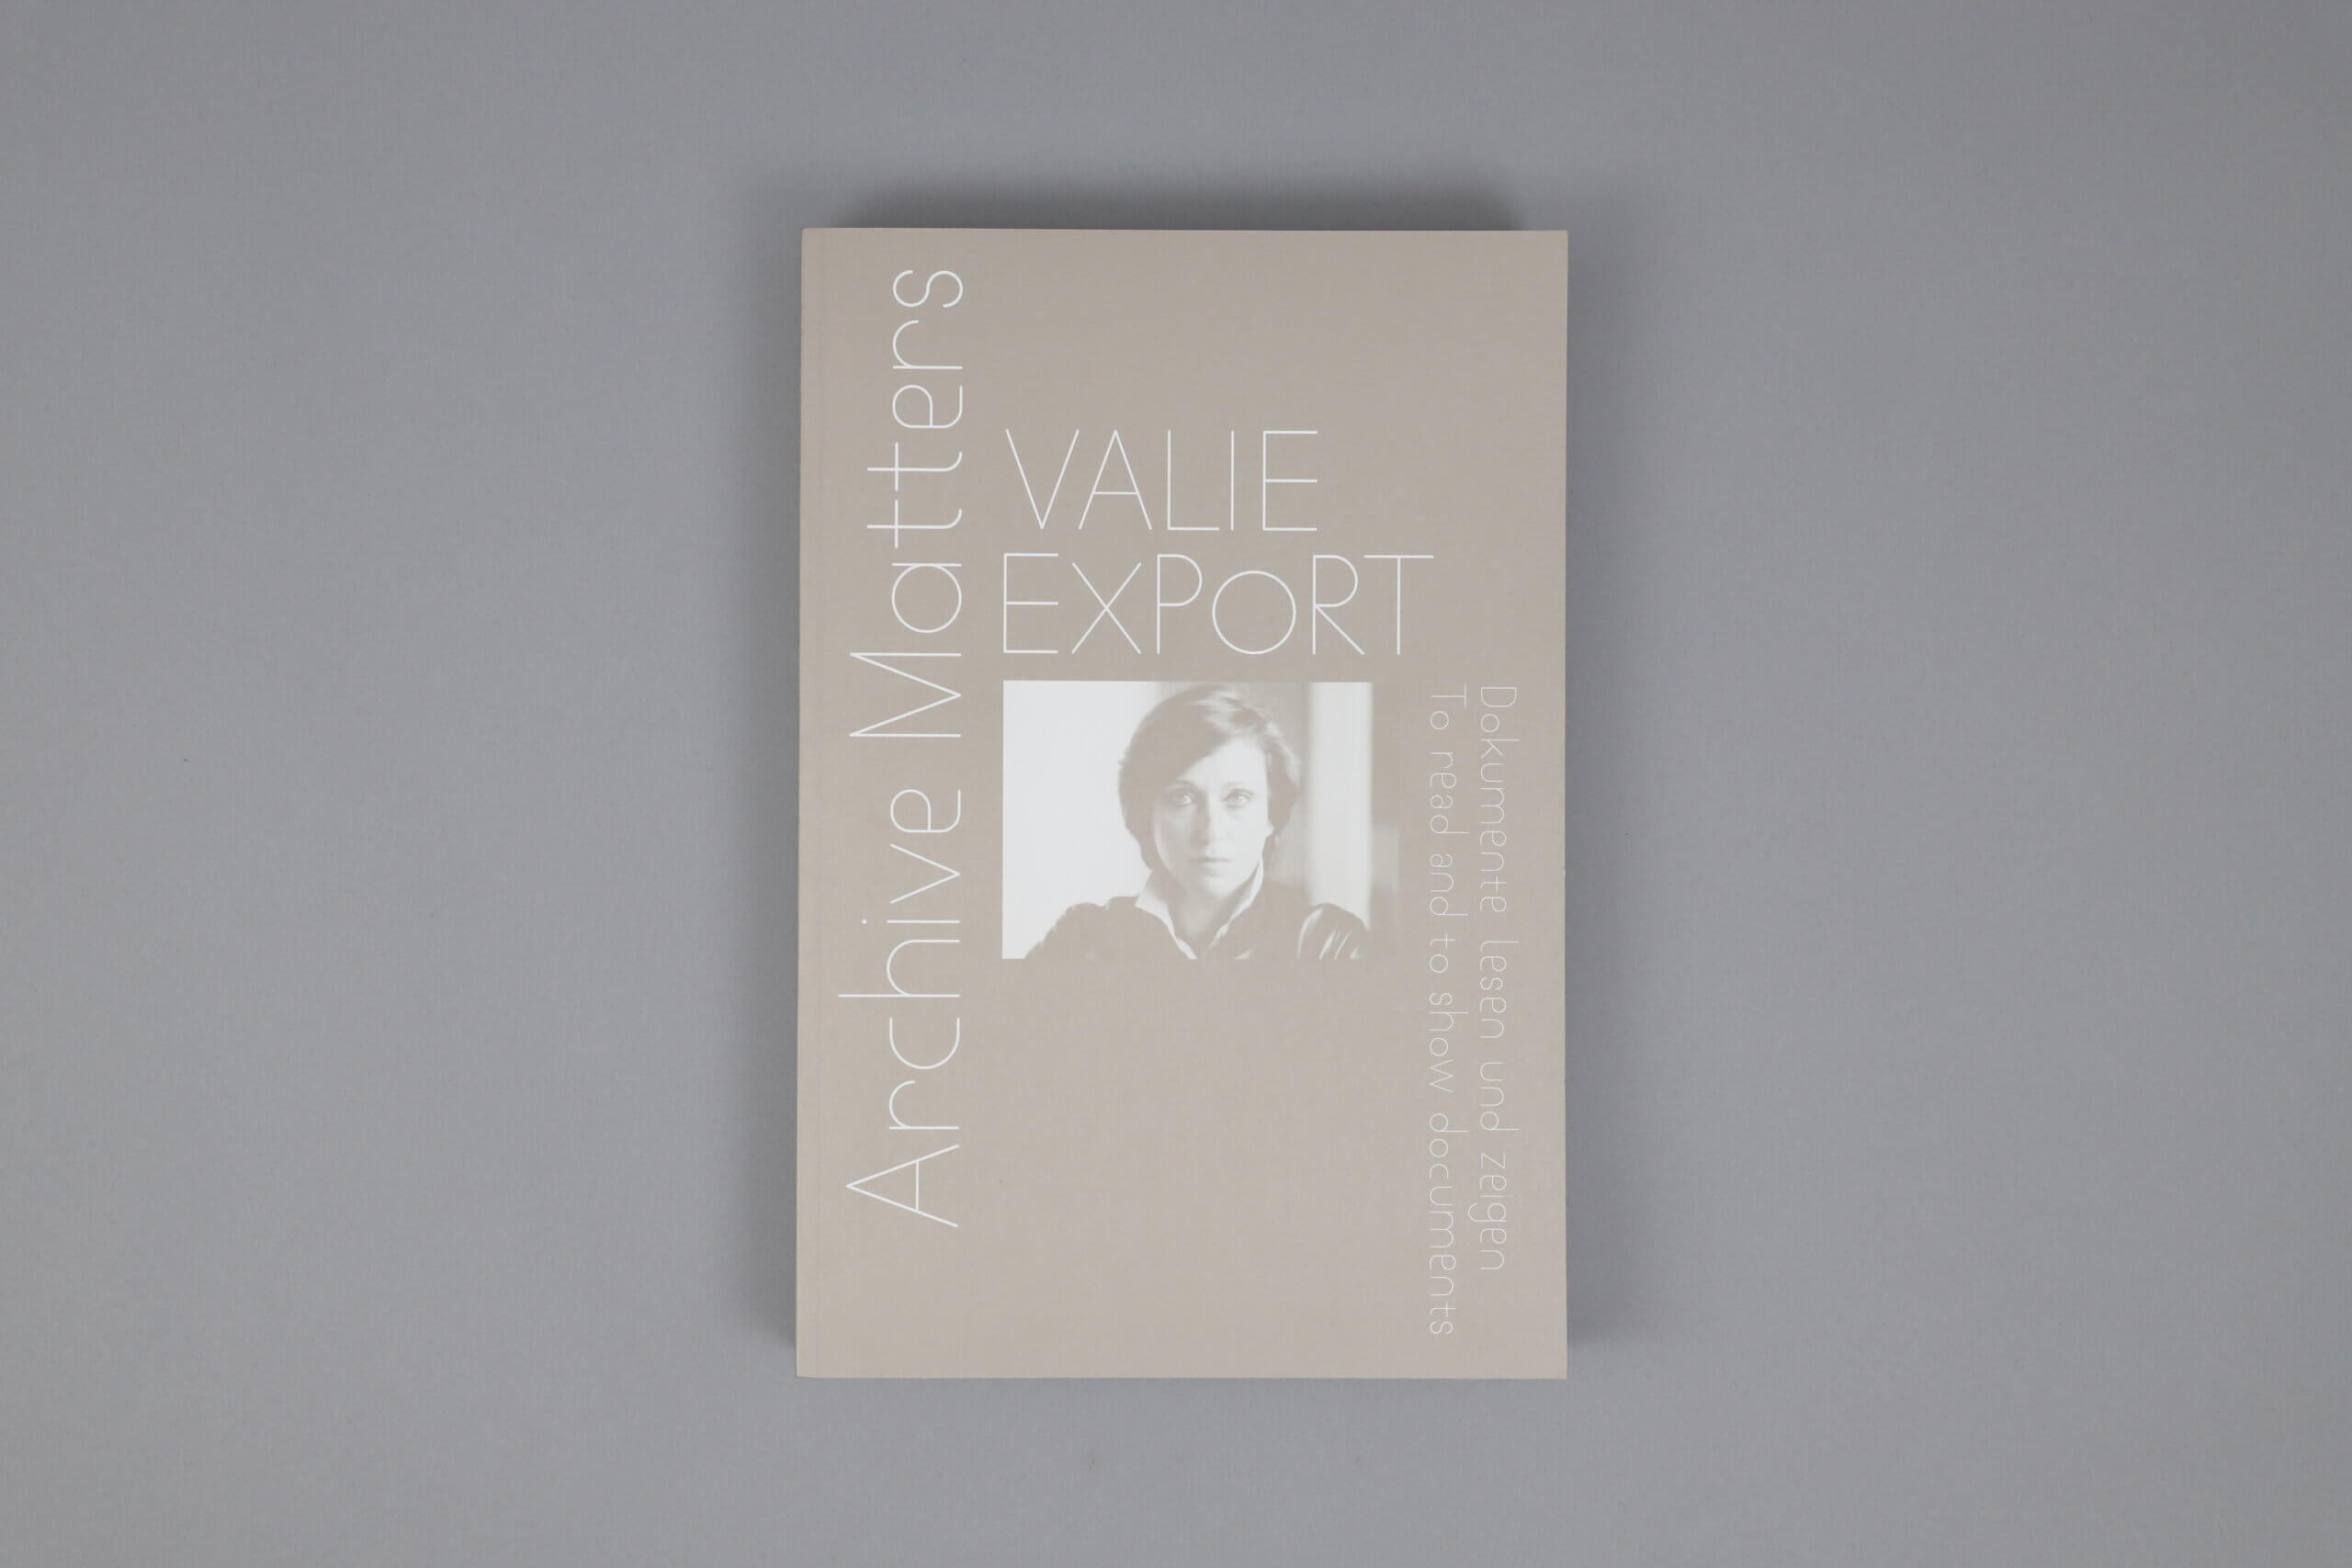 ValieExport-ArchiveMatters-WalterKoenig-1